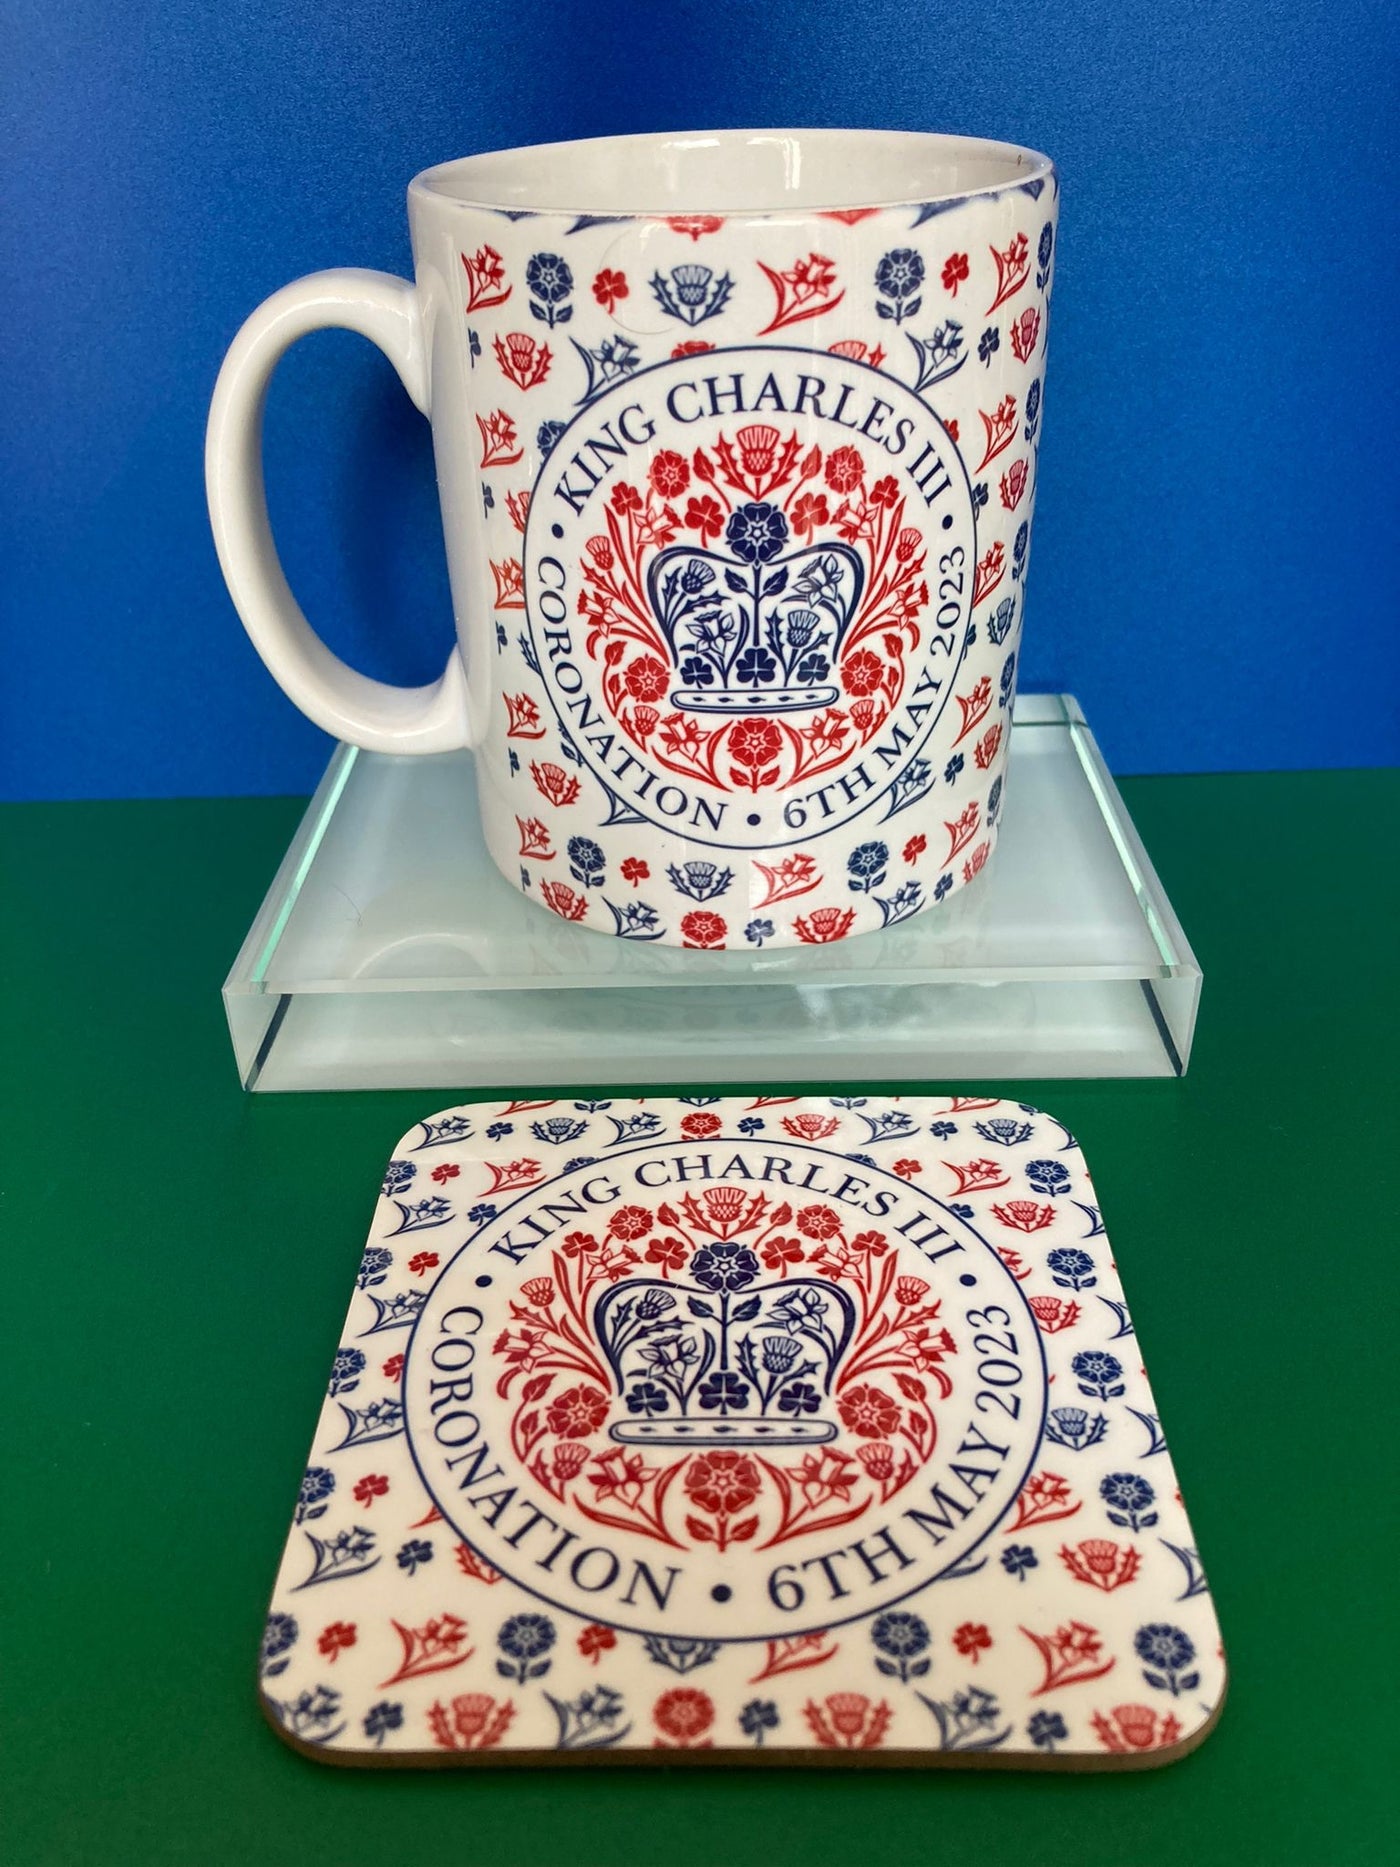 King Charles Coronation mug